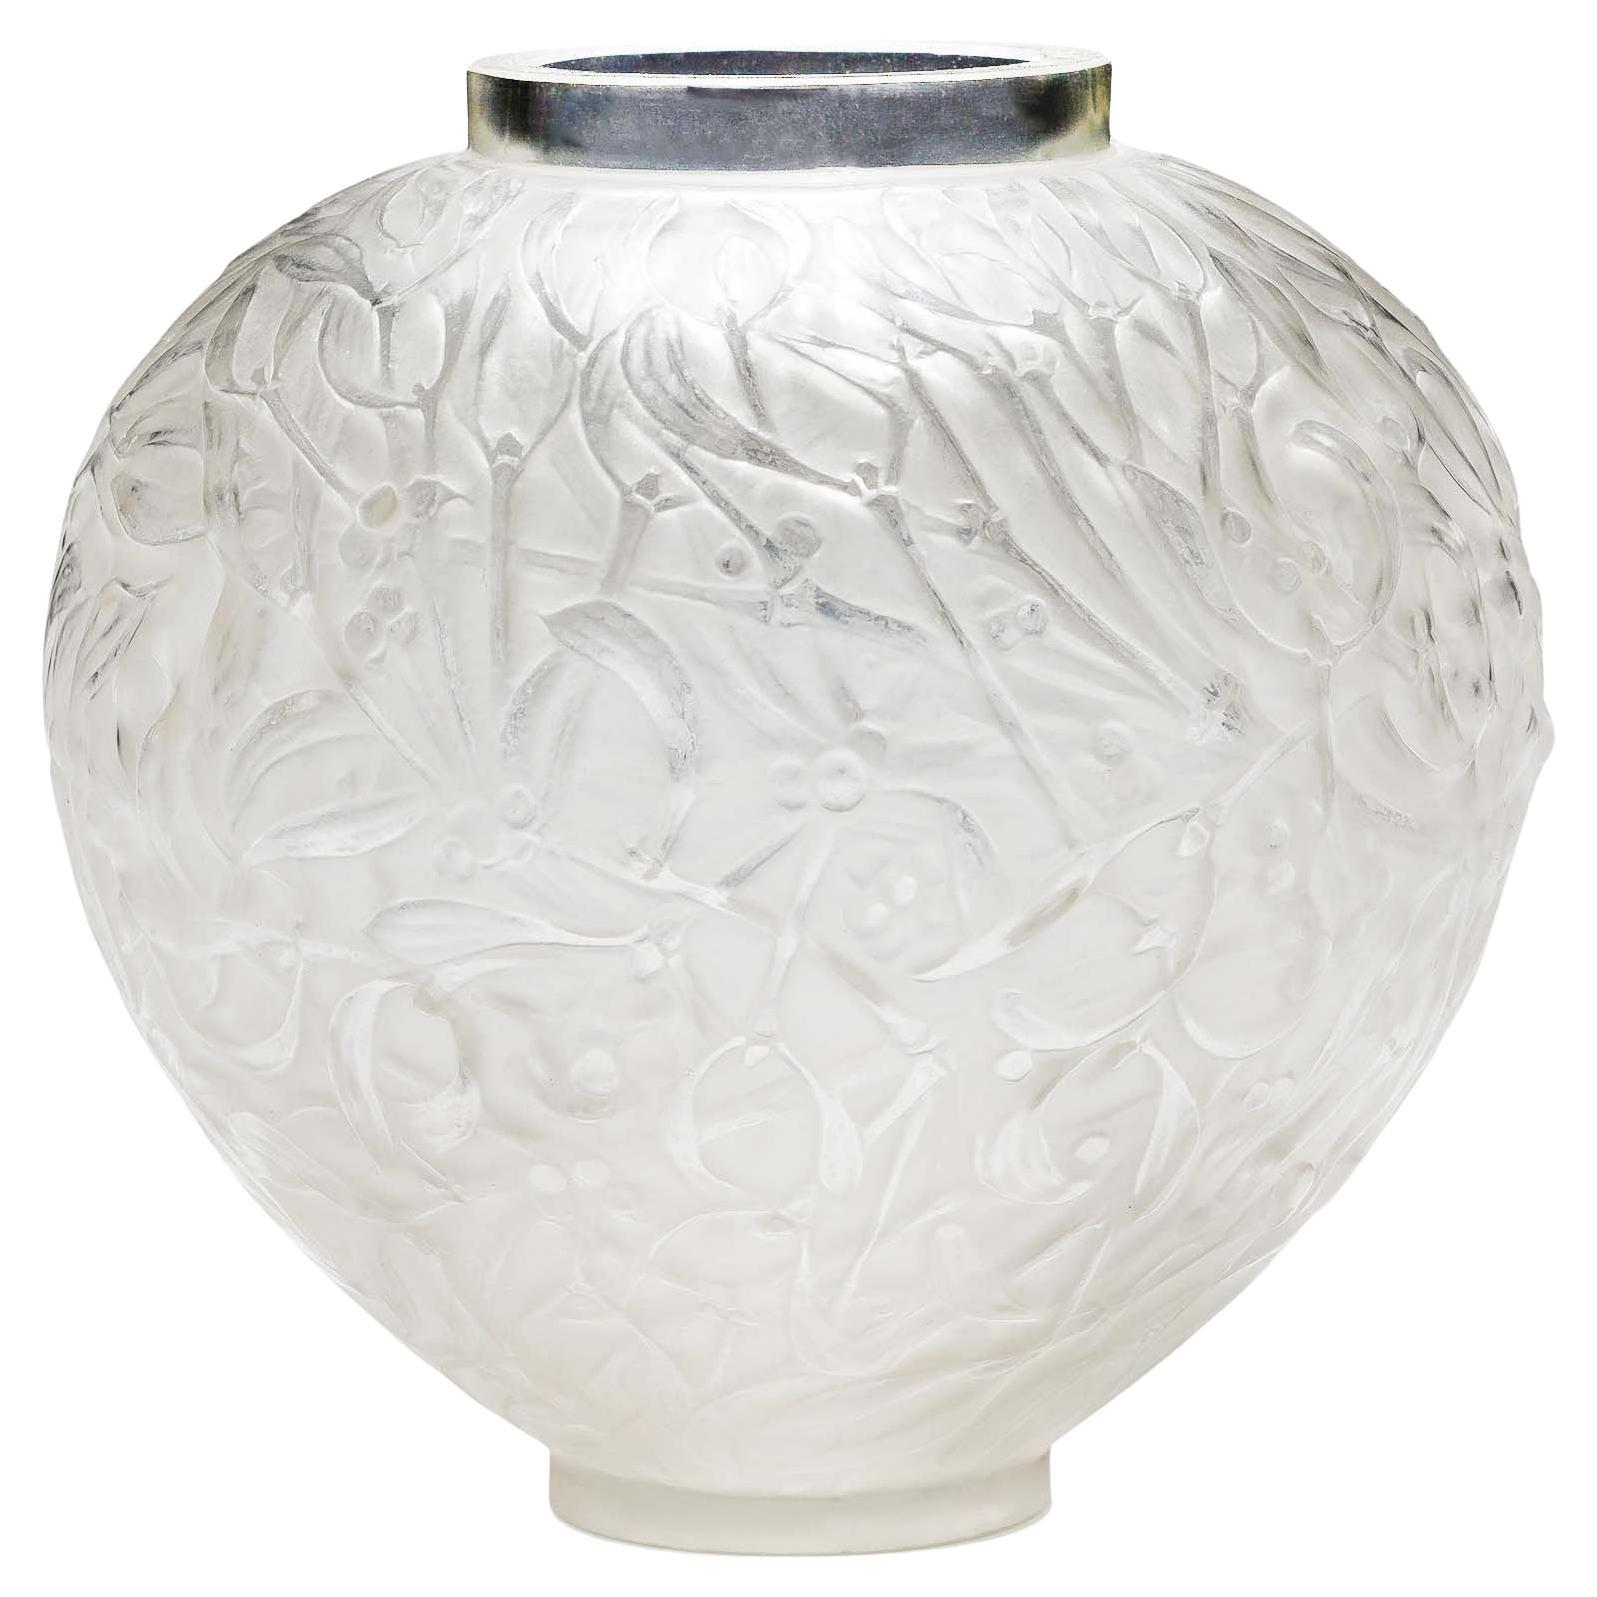 René Lalique "Gui" Vase aus Milchglas, 1920er Jahre